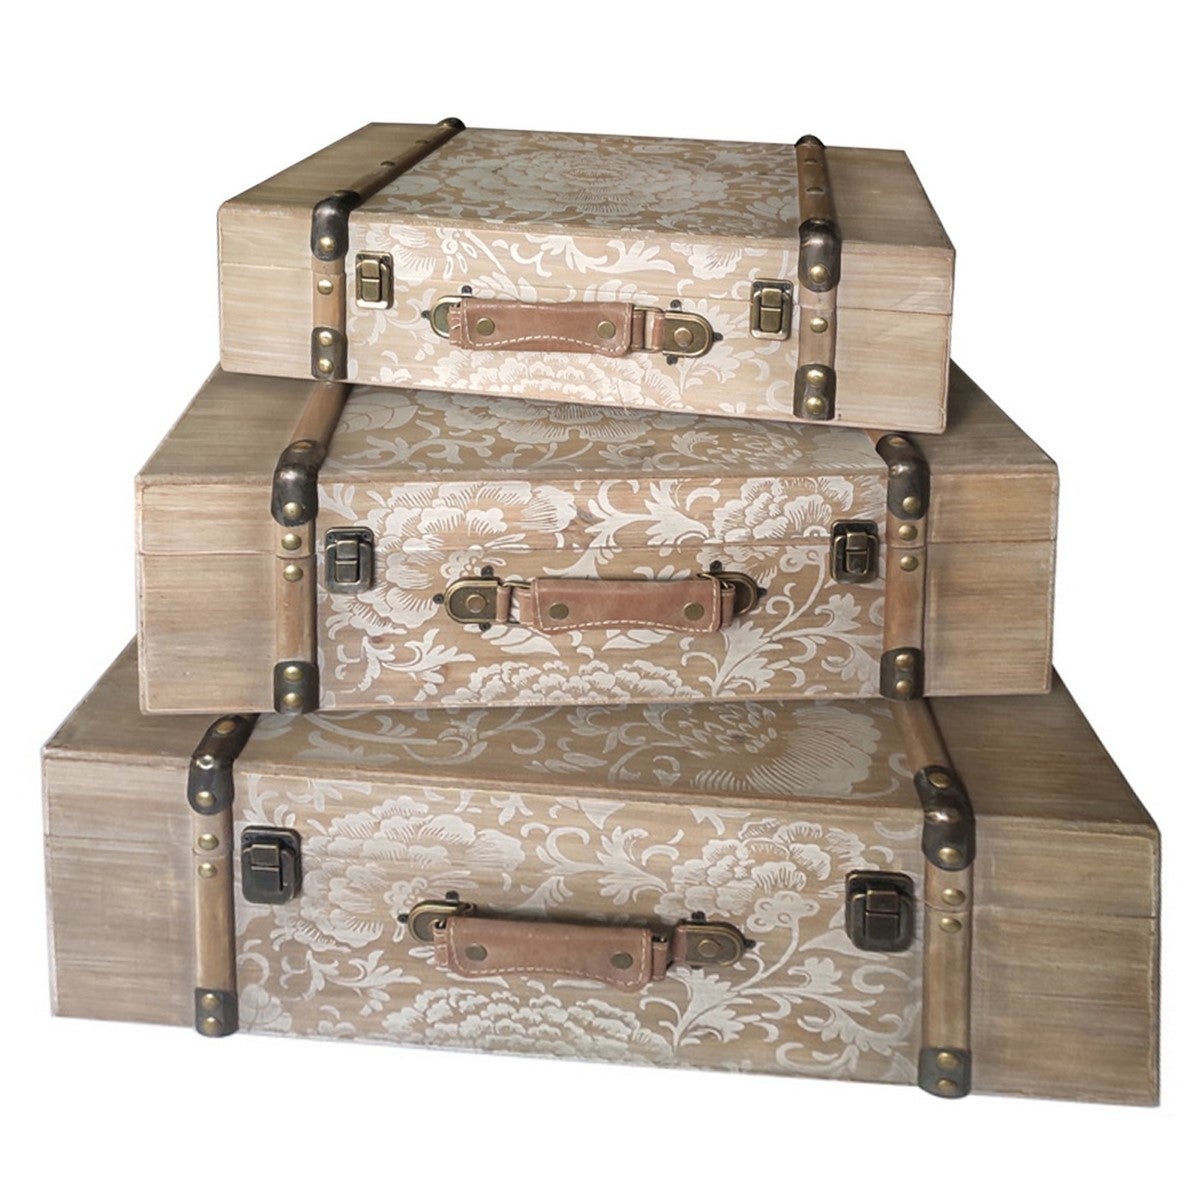 Maleta de madera, maleta antigua portátil, maleta vintage de madera,  decoración de maleta hecha a mano con cuidado